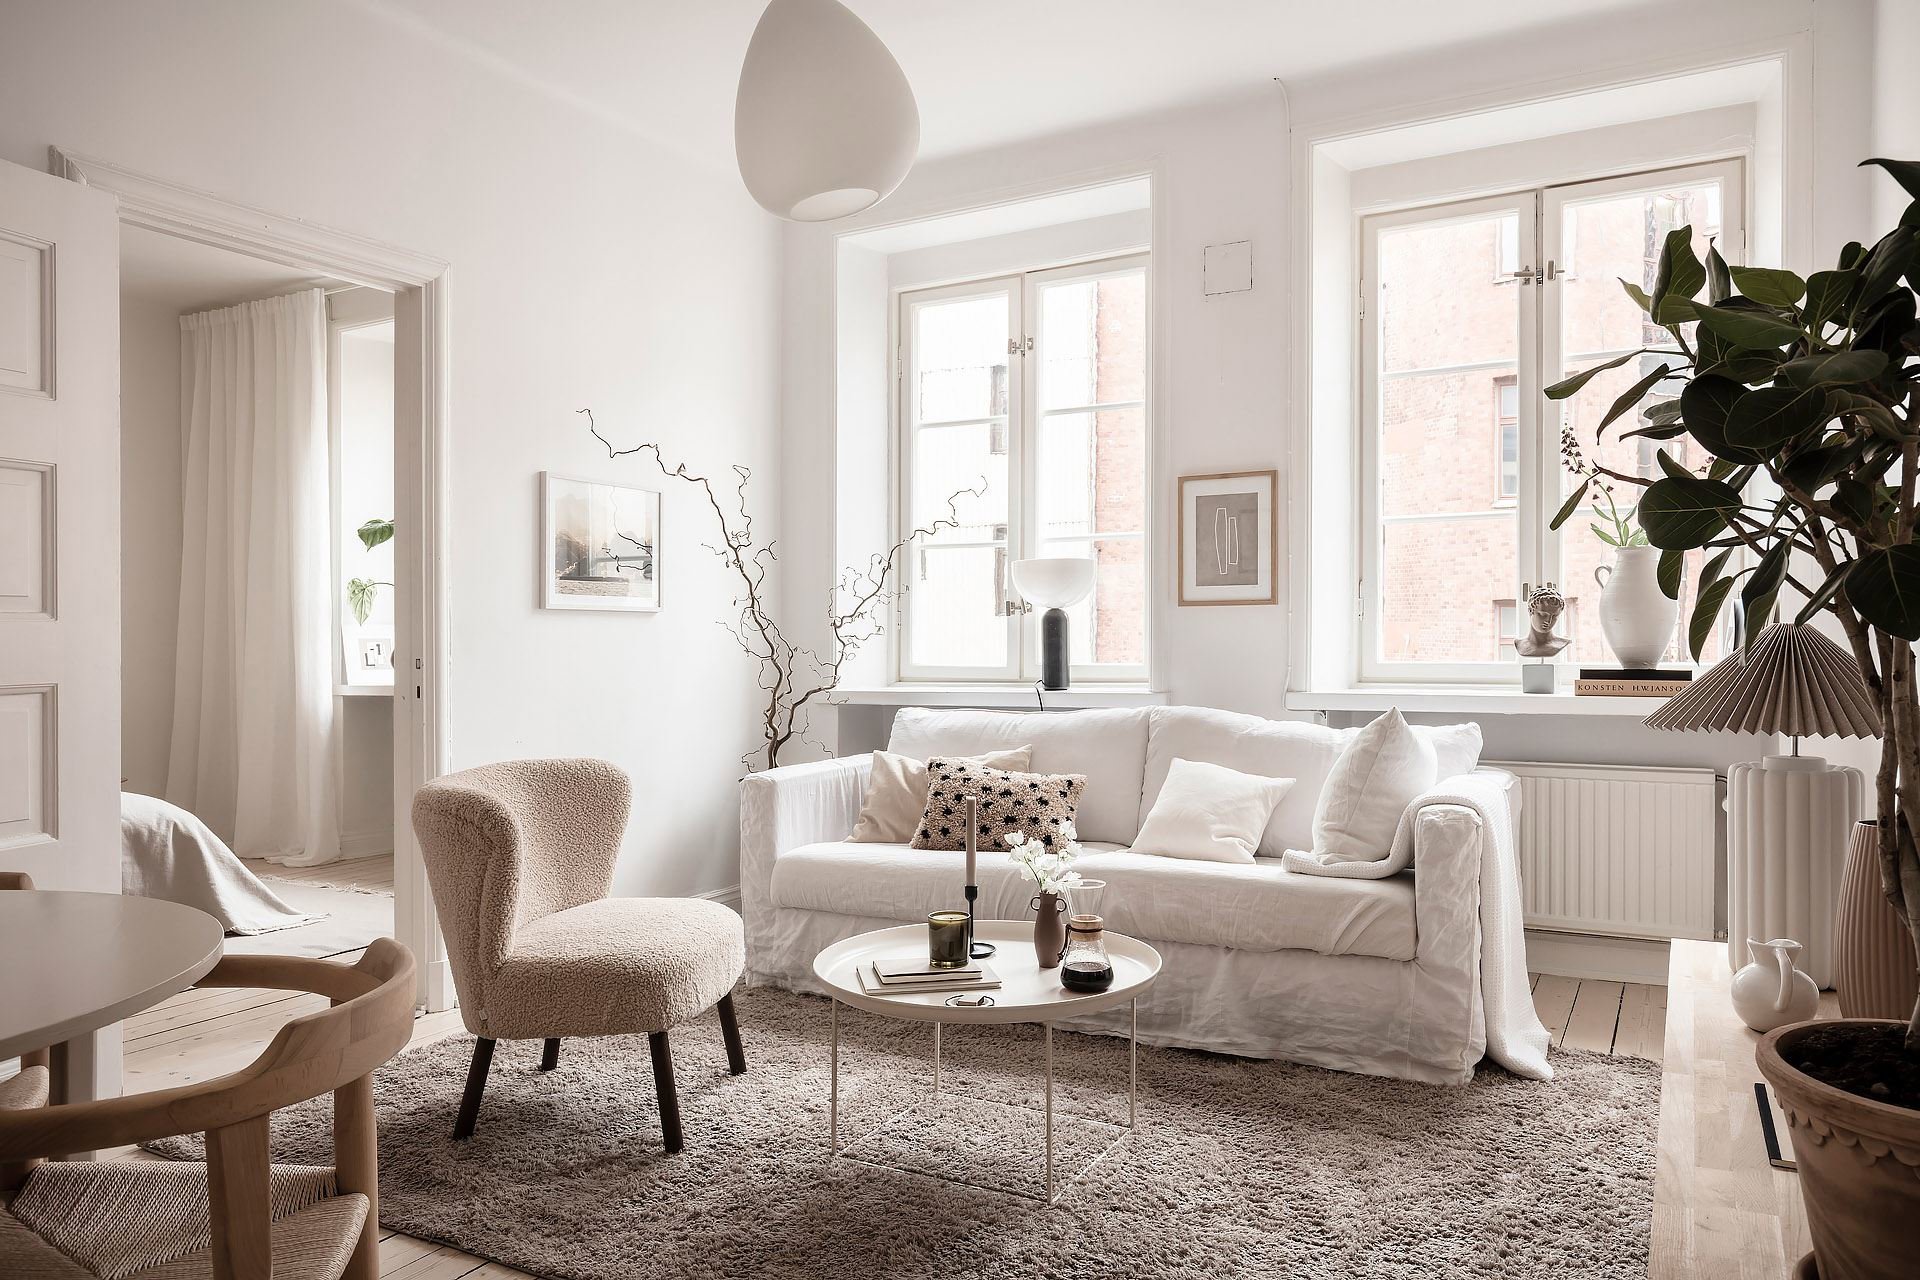 Salón de casa en Suecia con colores blancos, texturas y plantas grandes. Cuenta con buena iluminación, típico de los salones nórdicos. 